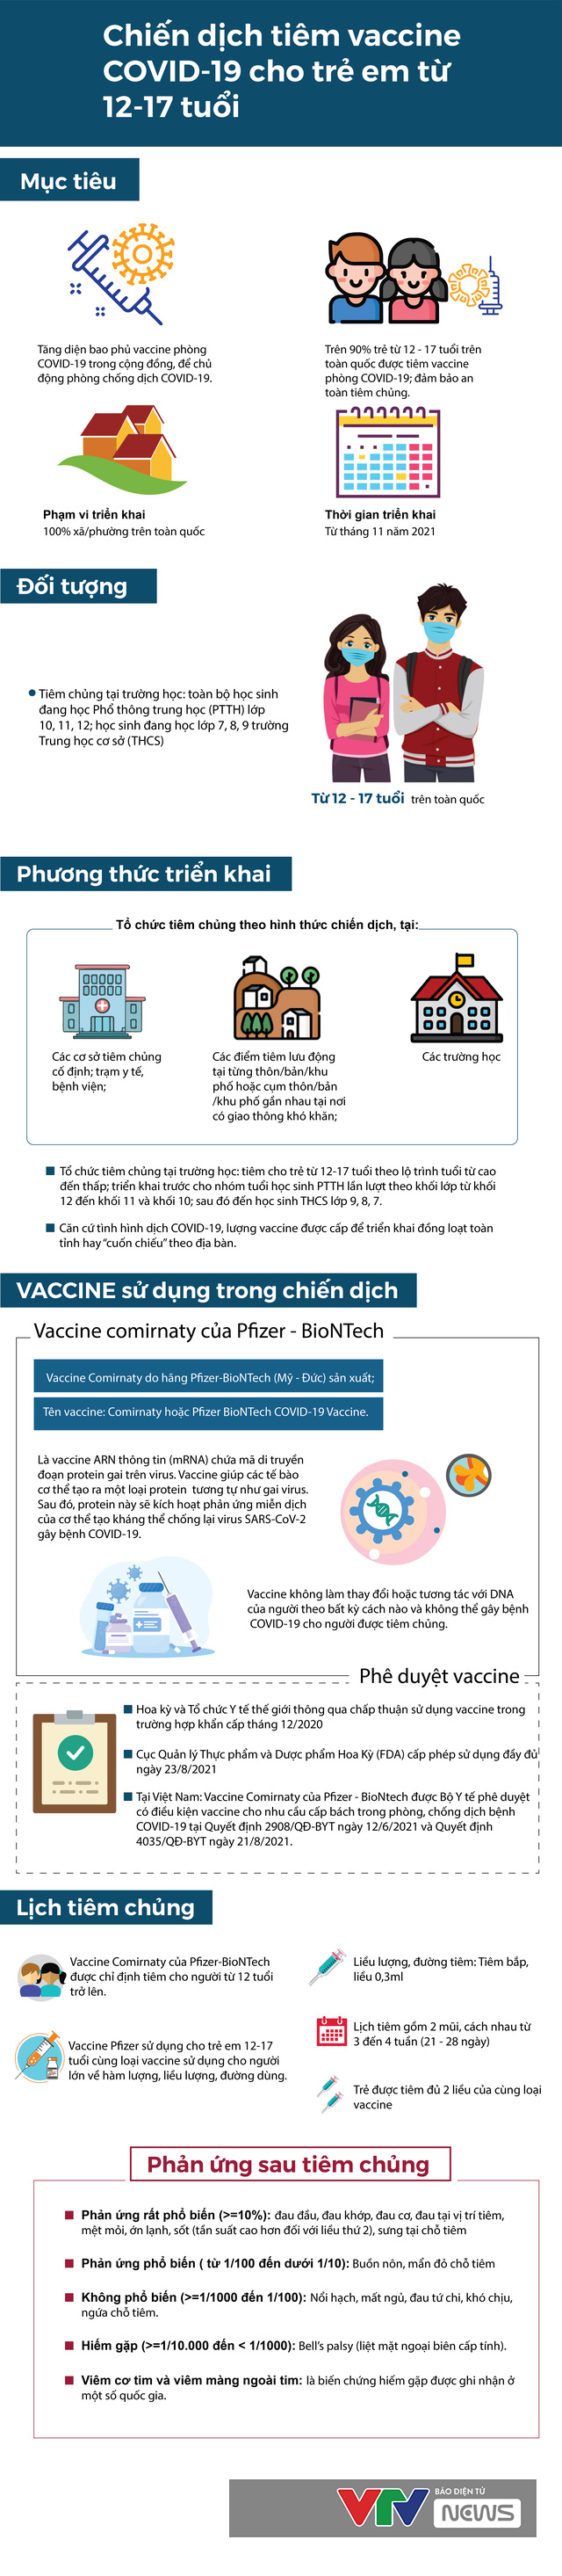 [Infographic] Thông tin cần biết về chiến dịch tiêm vaccine COVID